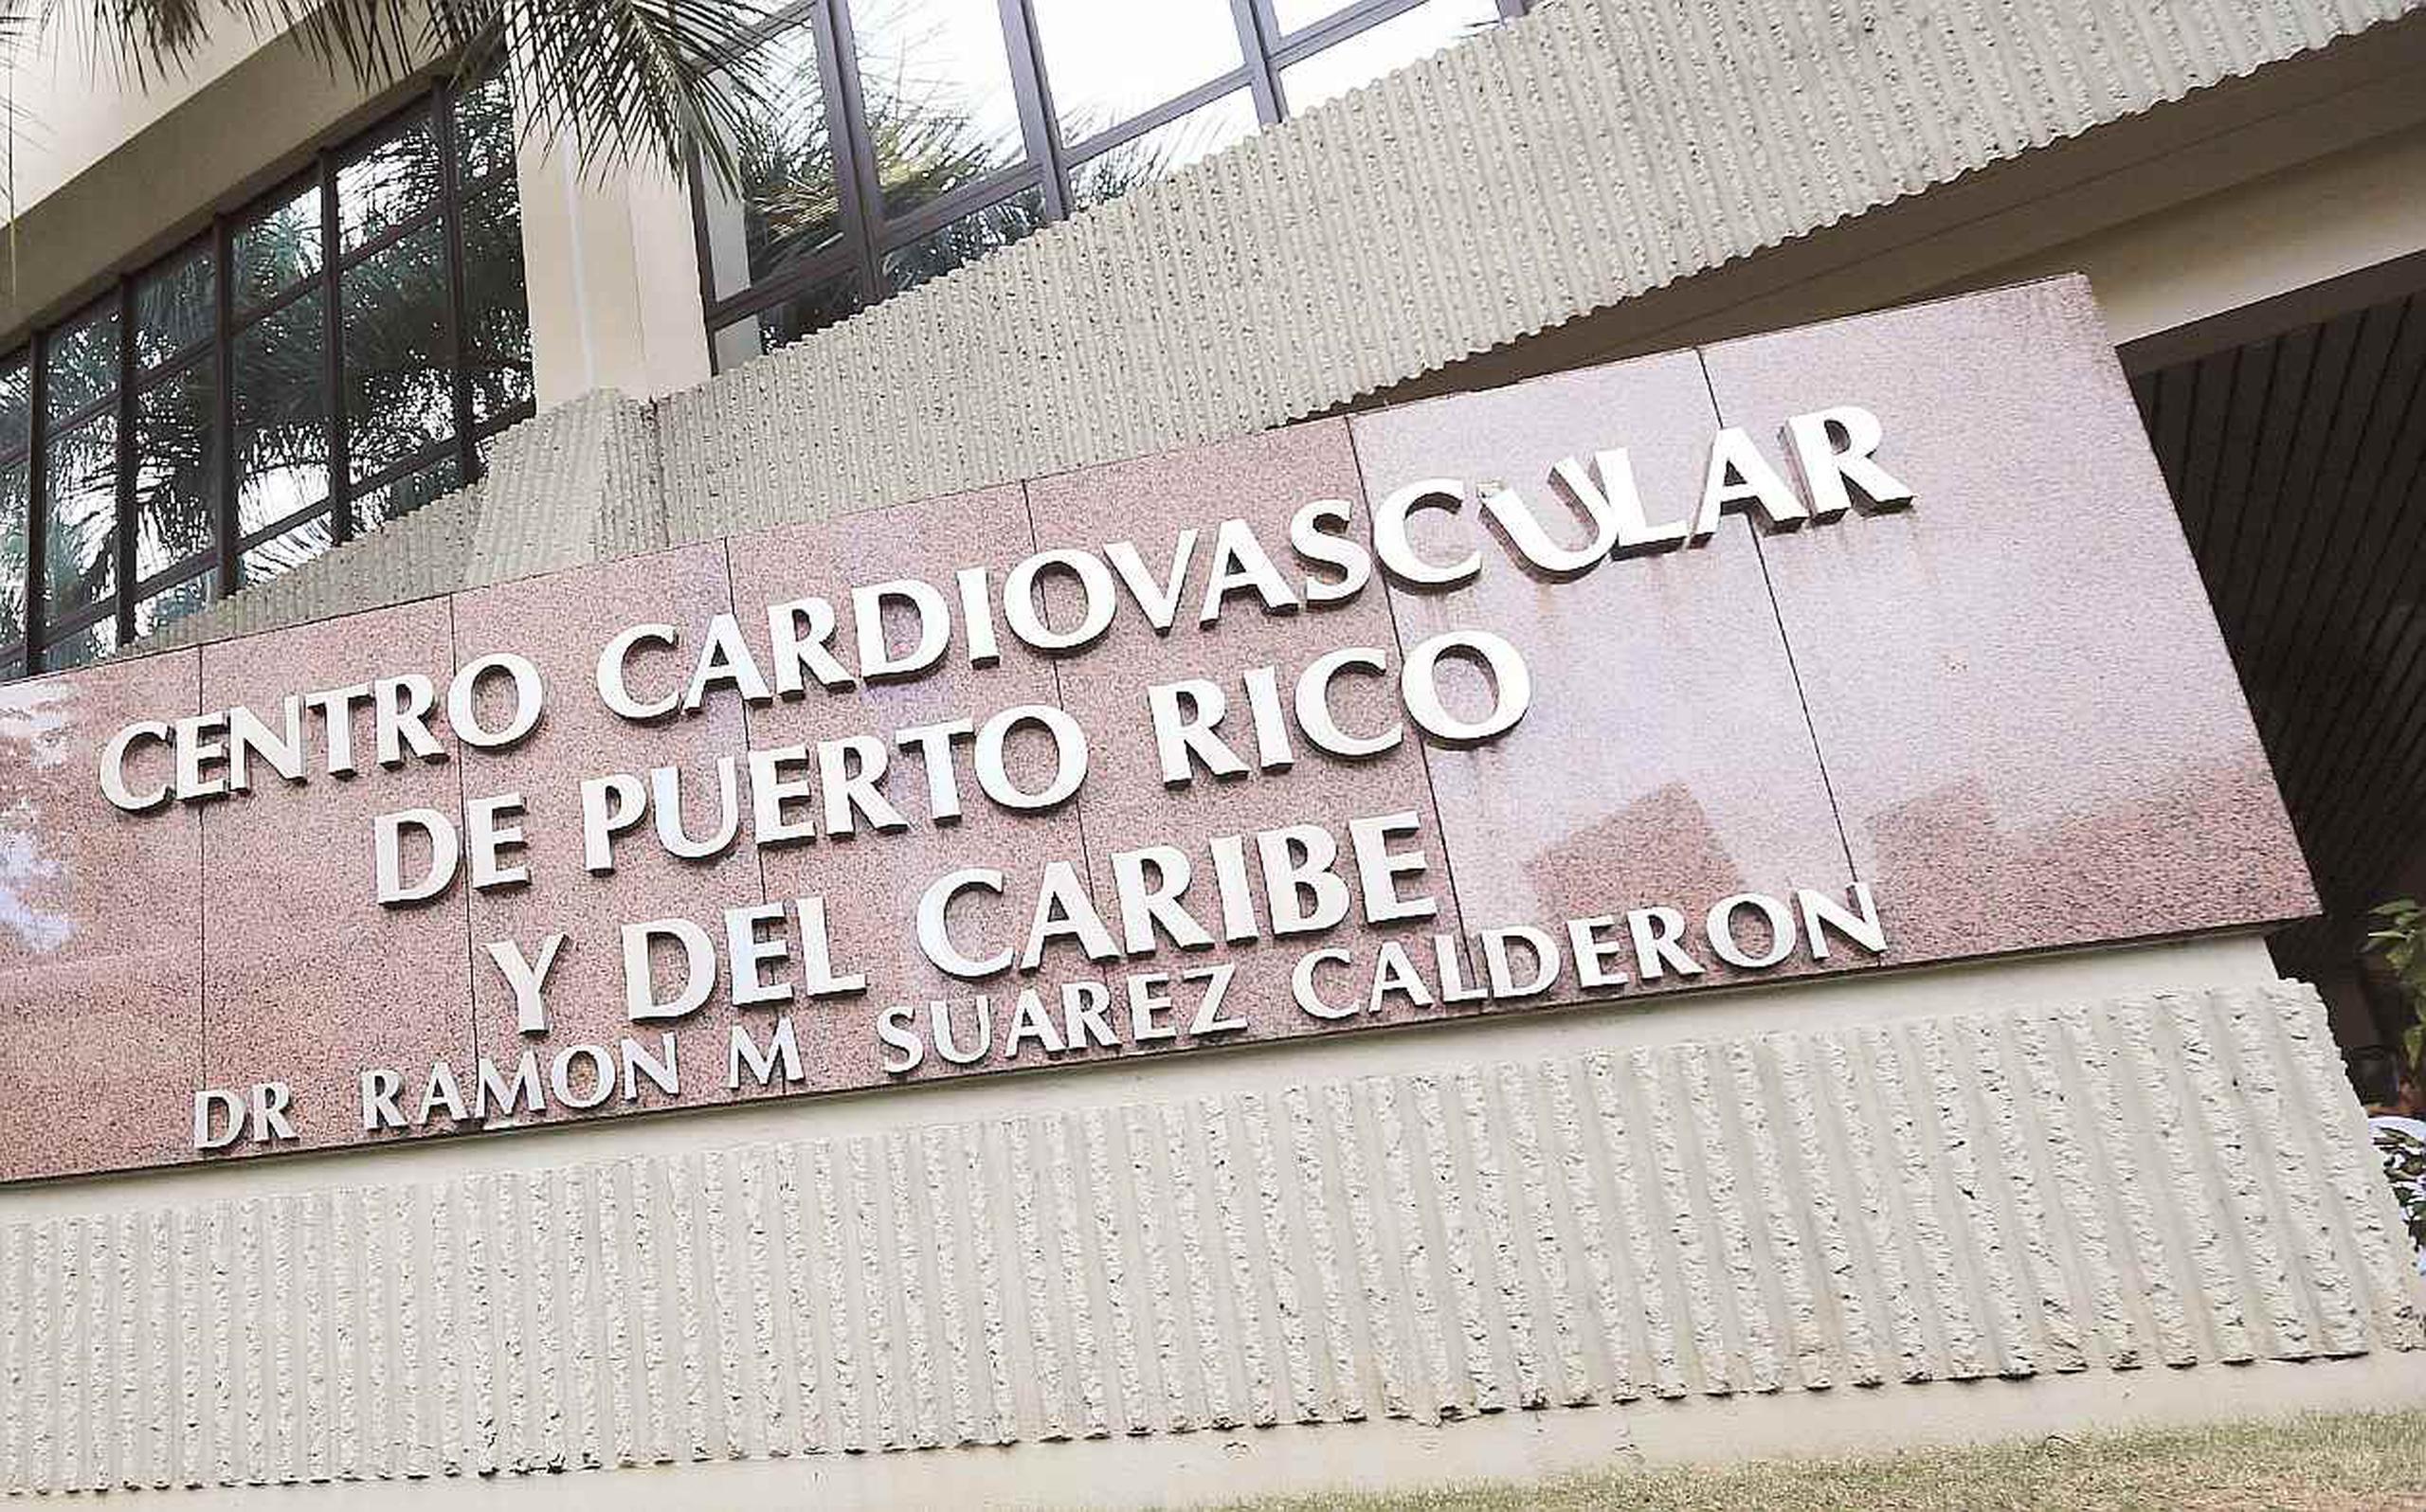 El Centro Cardiovascular de Puerto Rico y del Caribe necesita 3,000 kilos de electricidad para funcionar normalmente, pero las dos plantas de emergencia que tiene solo generan 1,800 kilos.